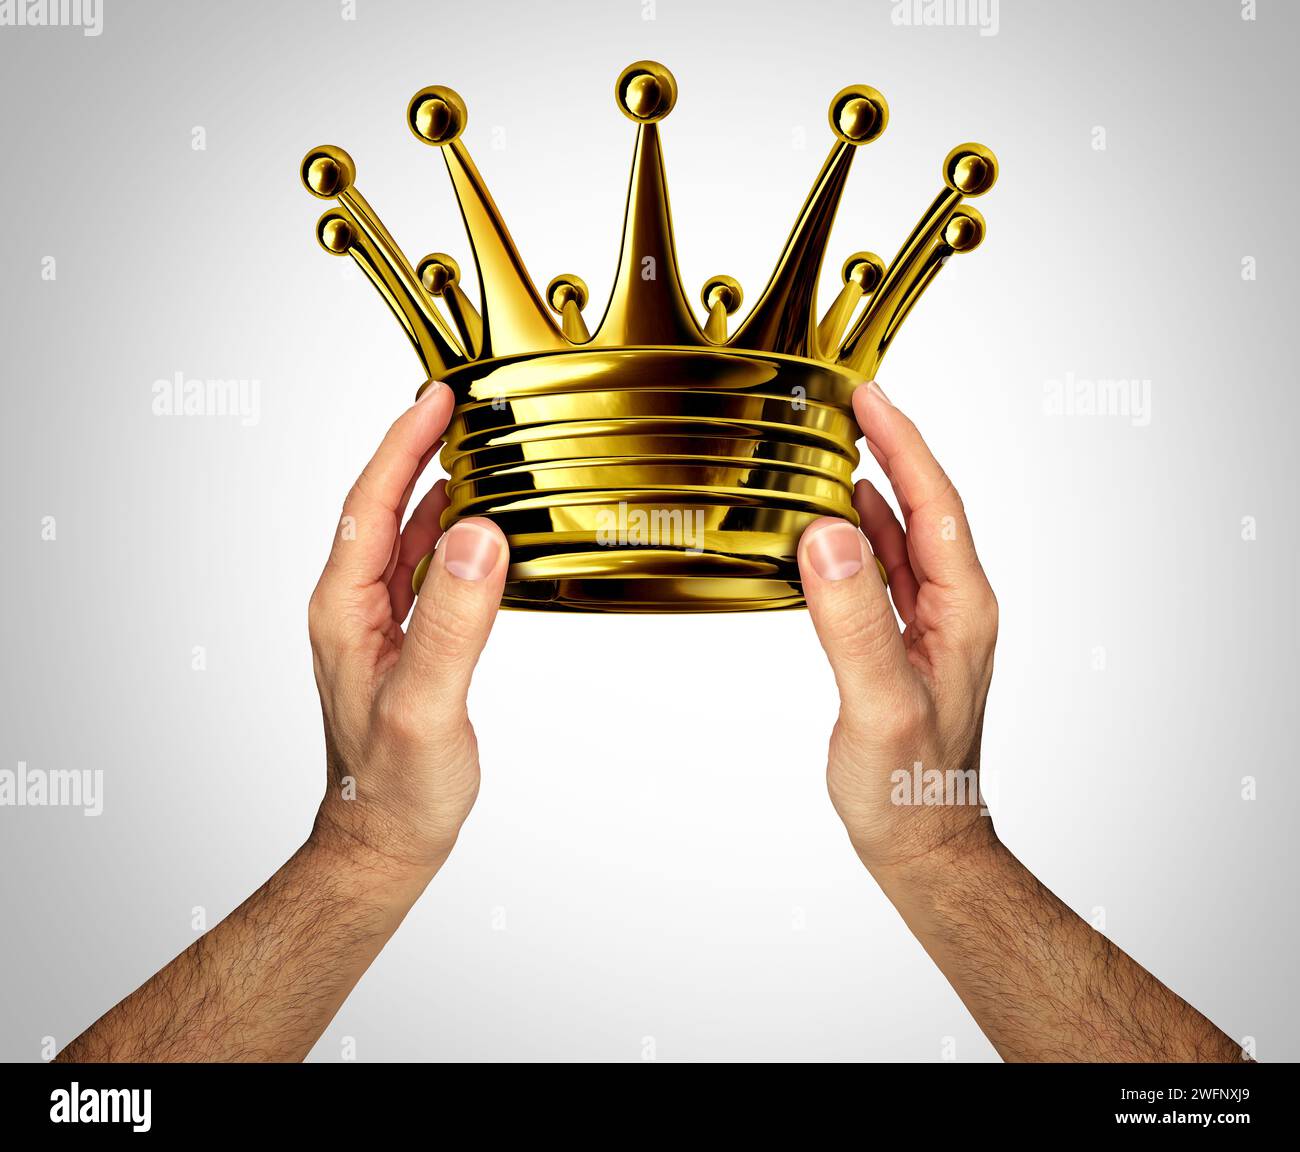 Coronando Corona de Coronación como una persona que otorga o otorga un tocado de oro o oro como un honor que representa la realeza y la riqueza como un premio monarca Foto de stock